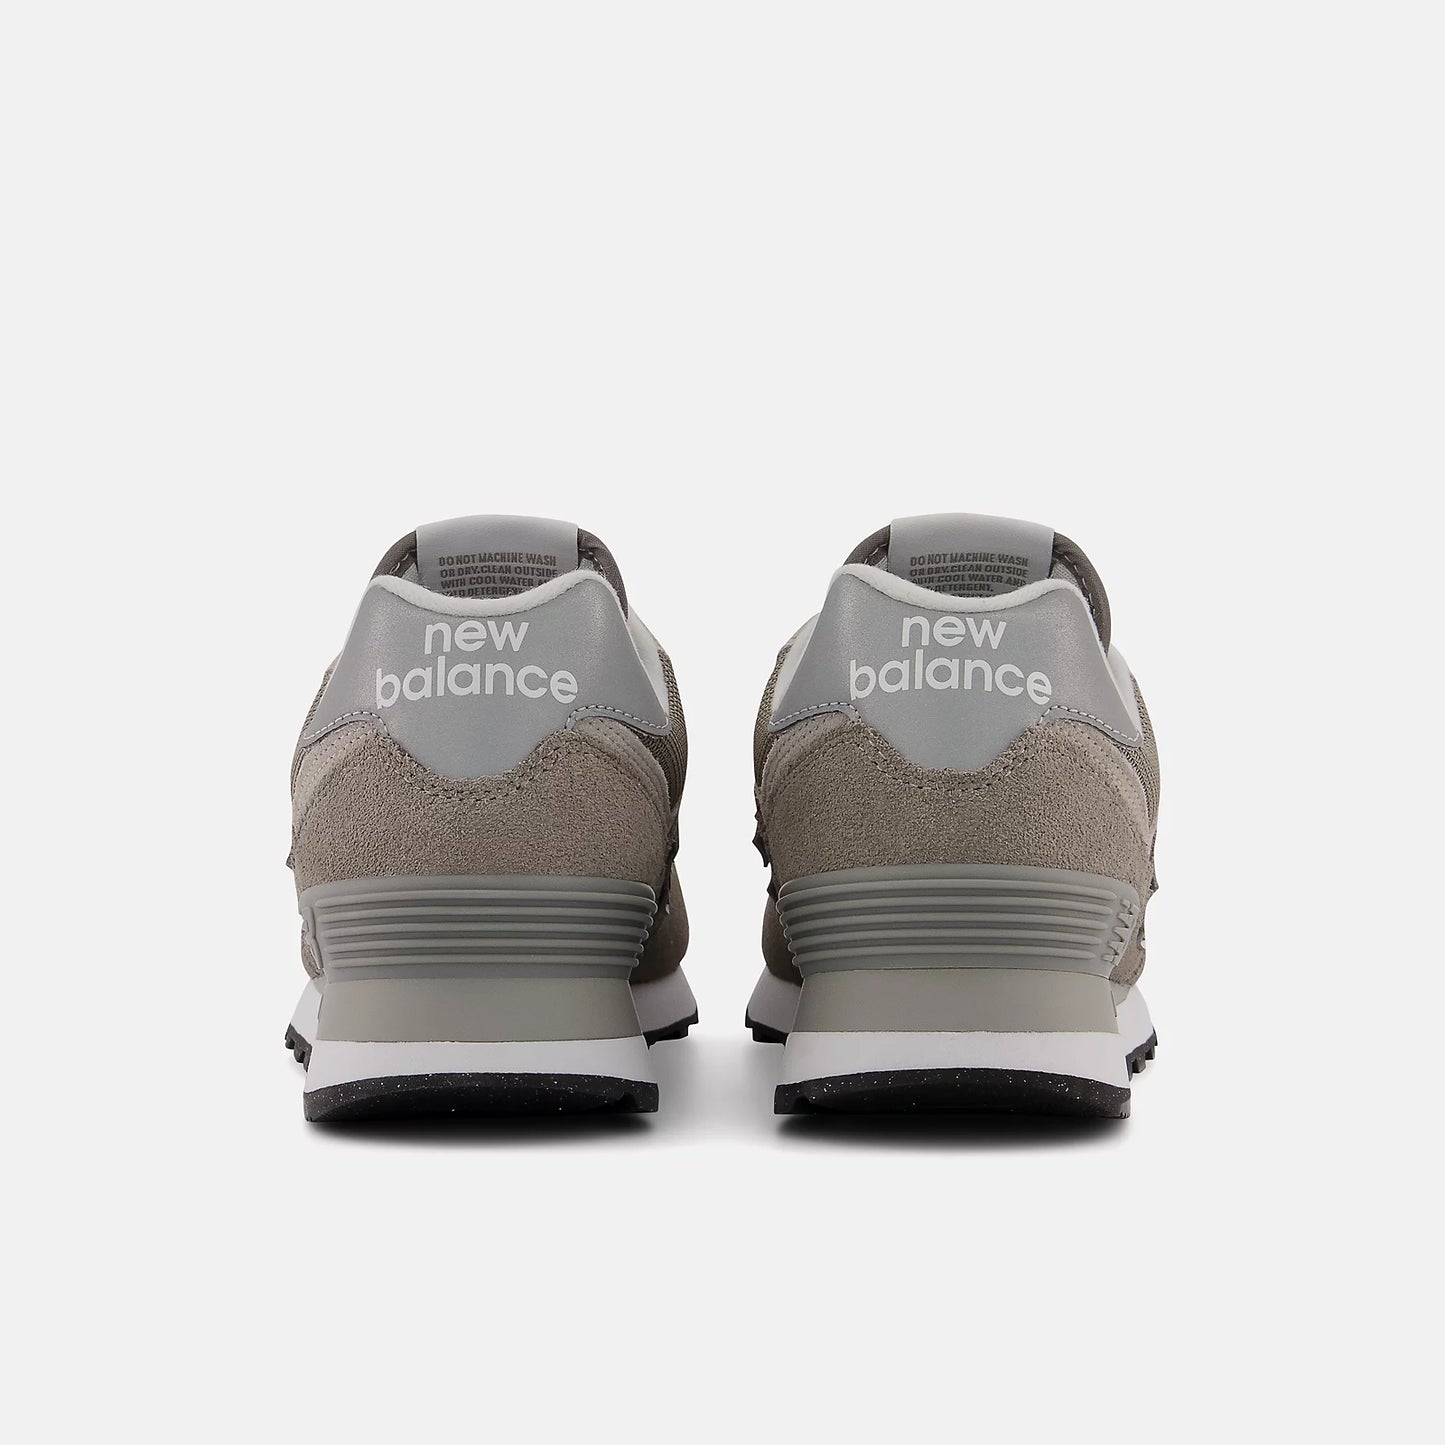 New Balance - Women's 574 Core - Grey/White (Size 6.5)